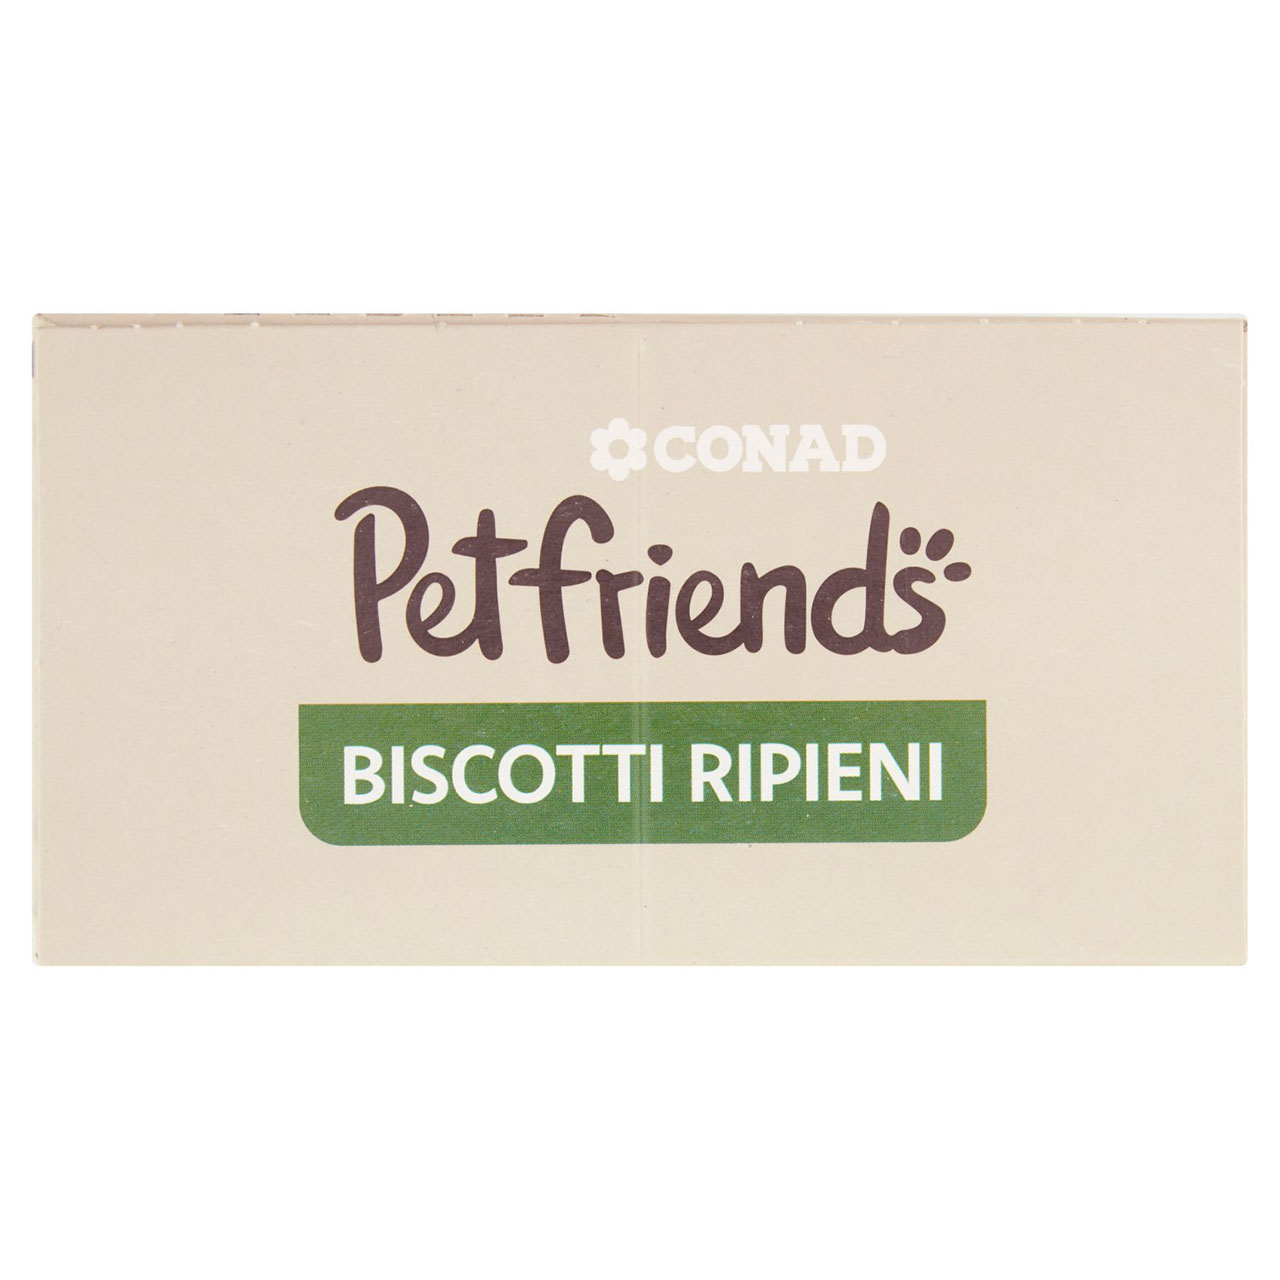 Petfriends Biscotti Ripieni 500 g Conad online